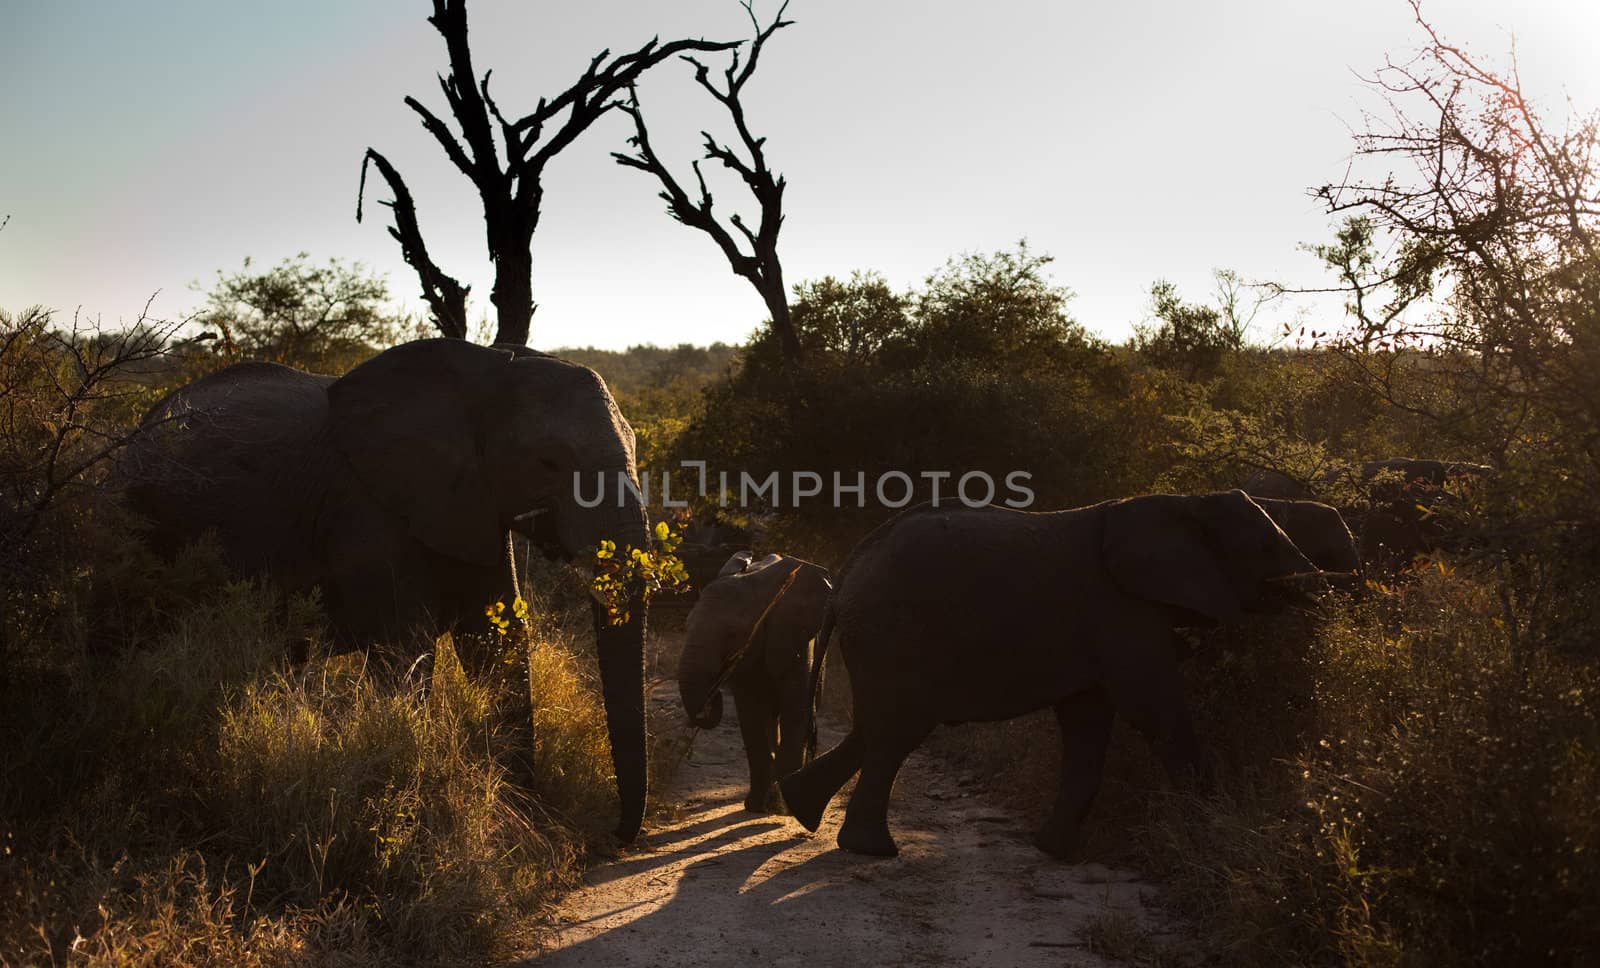 Elephants crossing a trail by edan